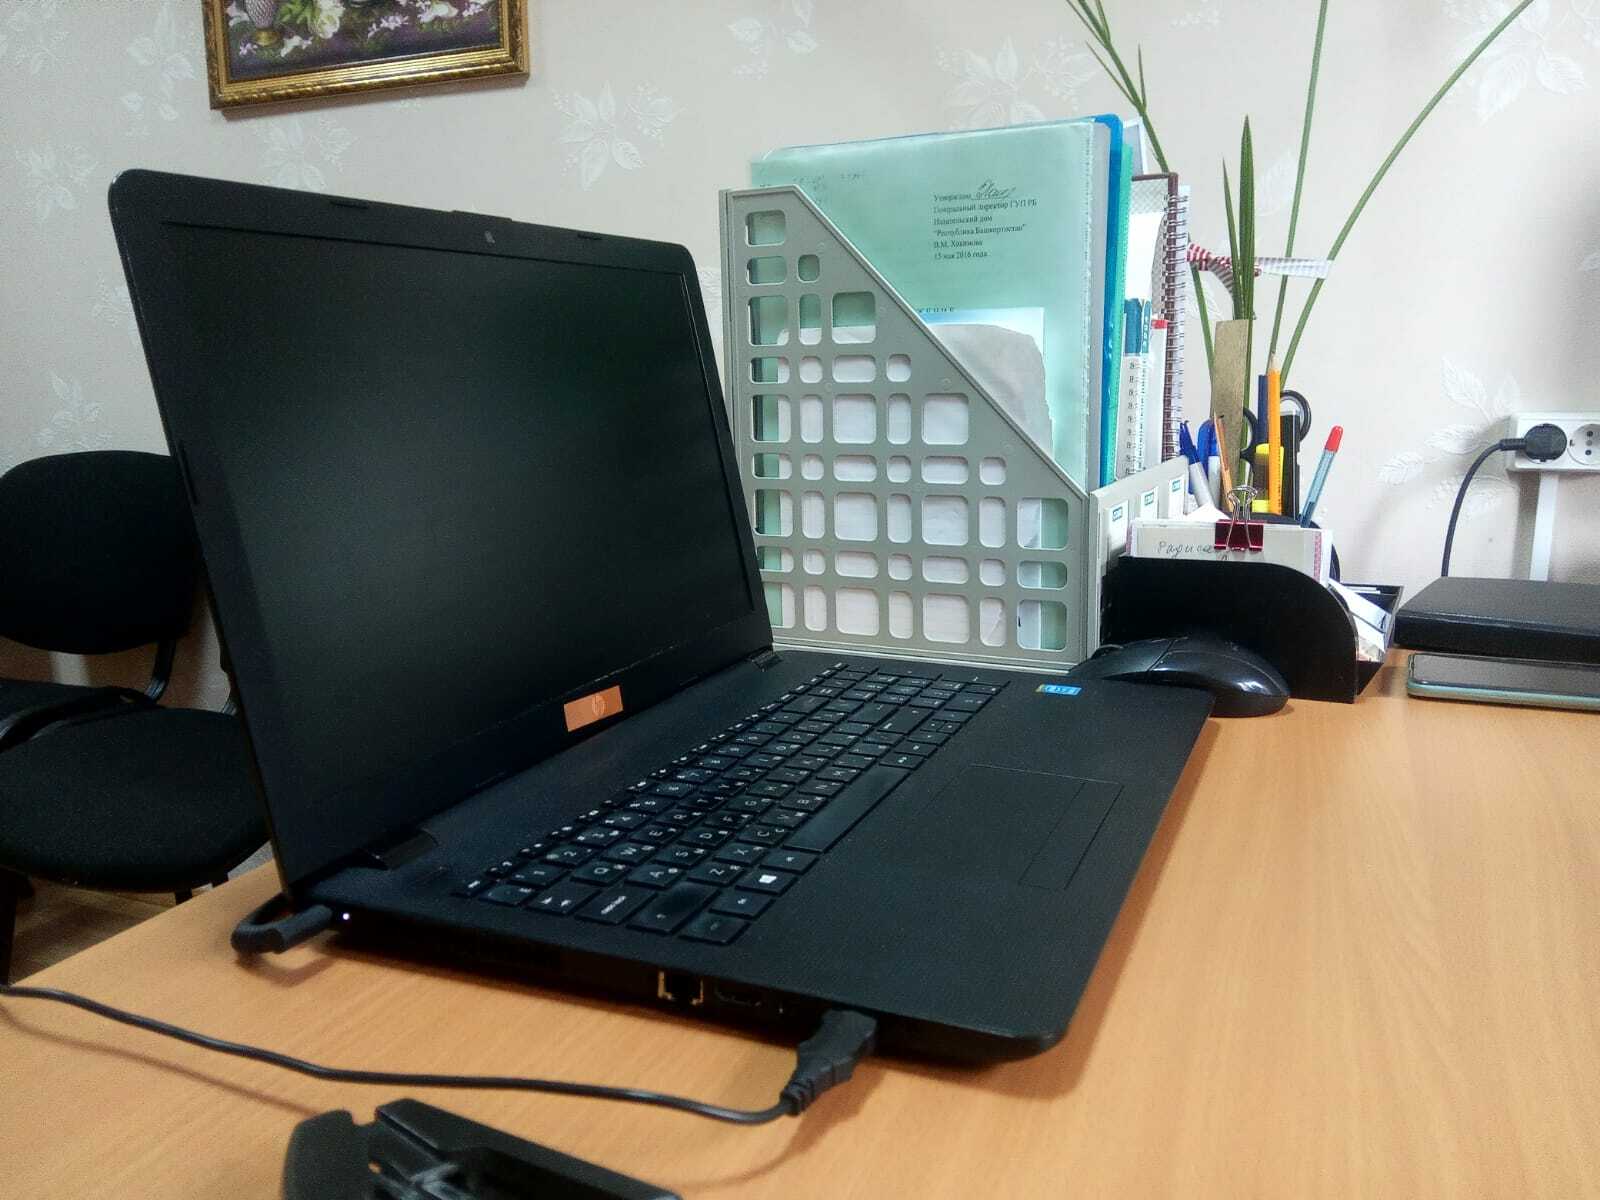 Пьяный житель Башкирии украл 11 школьных ноутбуков